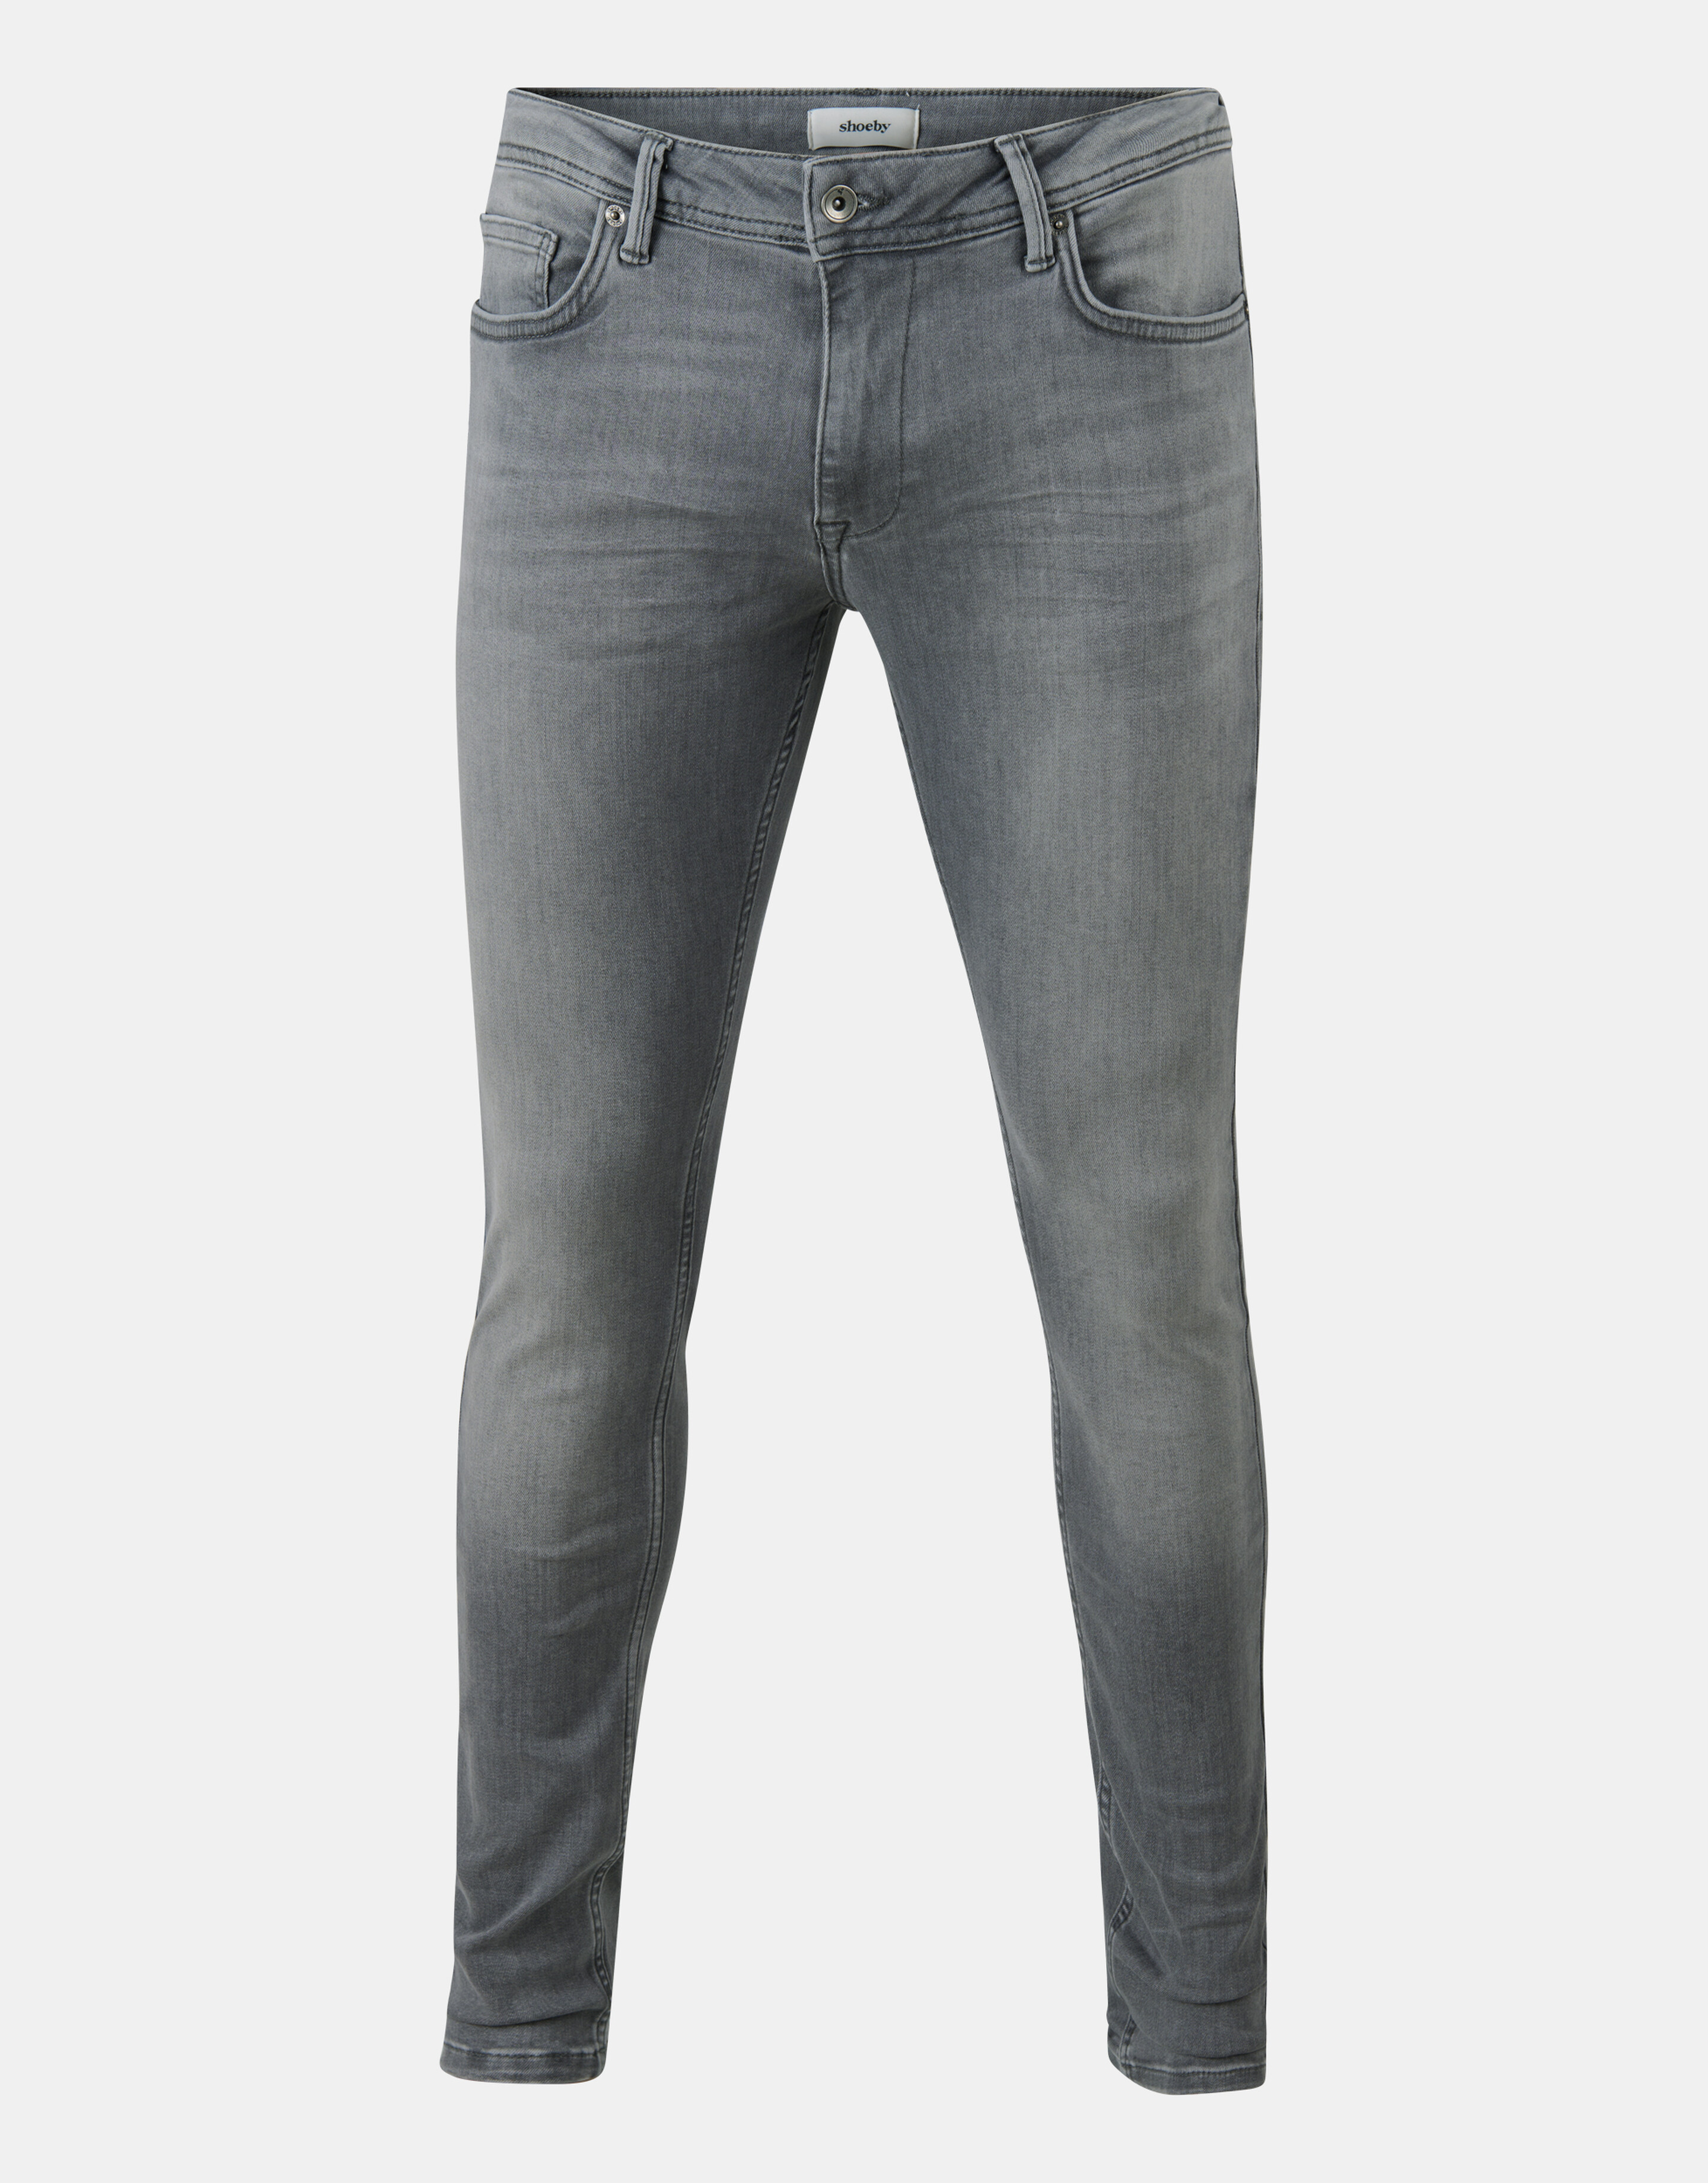 Skinny Fit Jeans Grijs L34 Refill